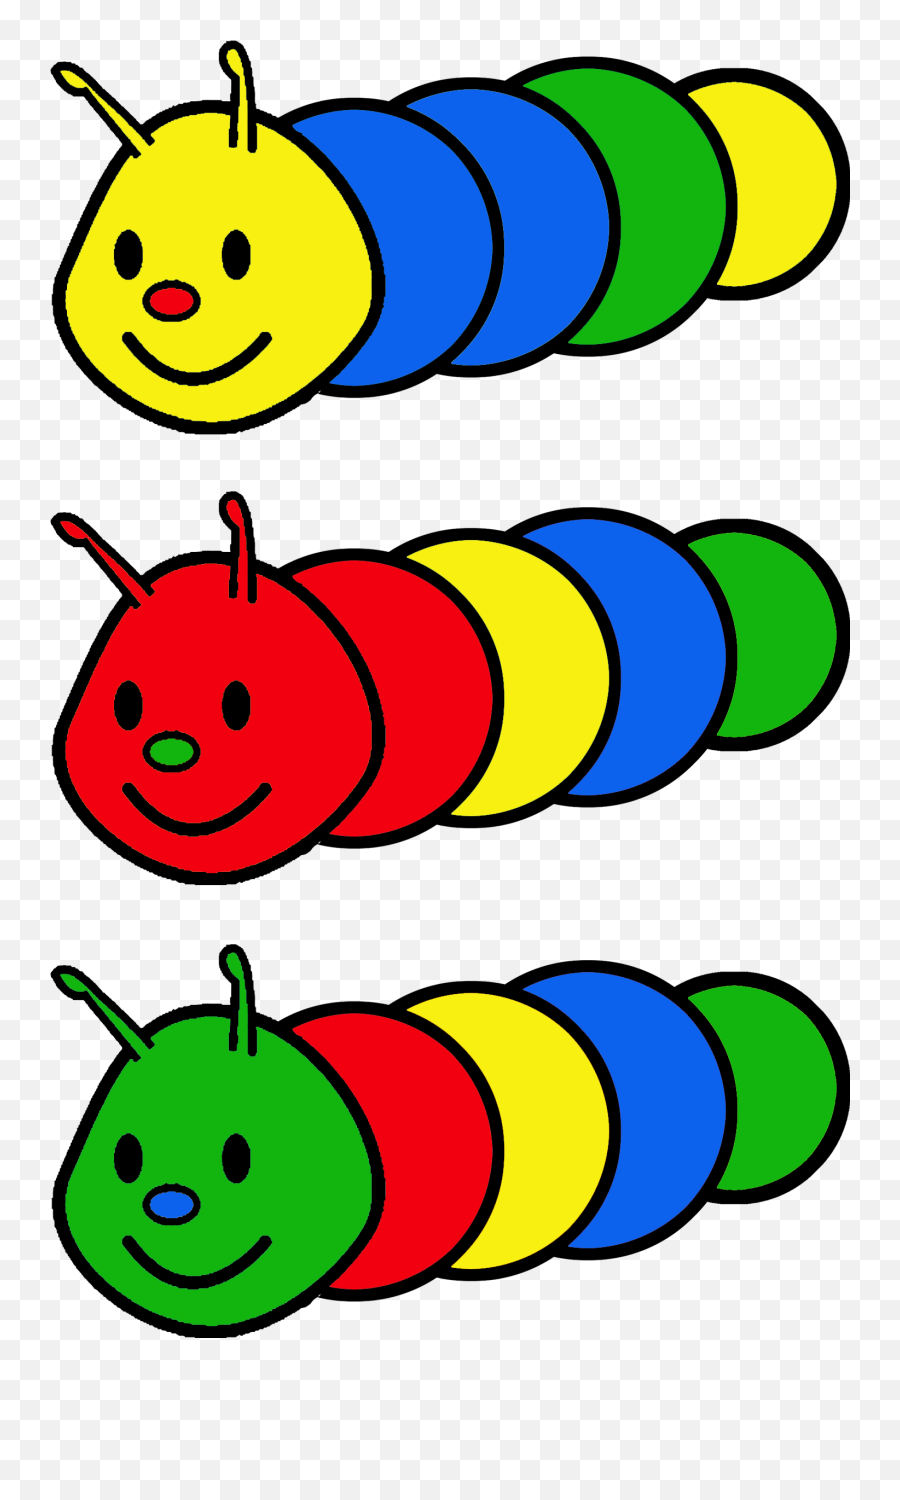 Opdrachtkaart 11 Kleurenrups A5 - Formaat Hungry Caterpillar Emoji,The Very Hungry Caterpillar Clipart